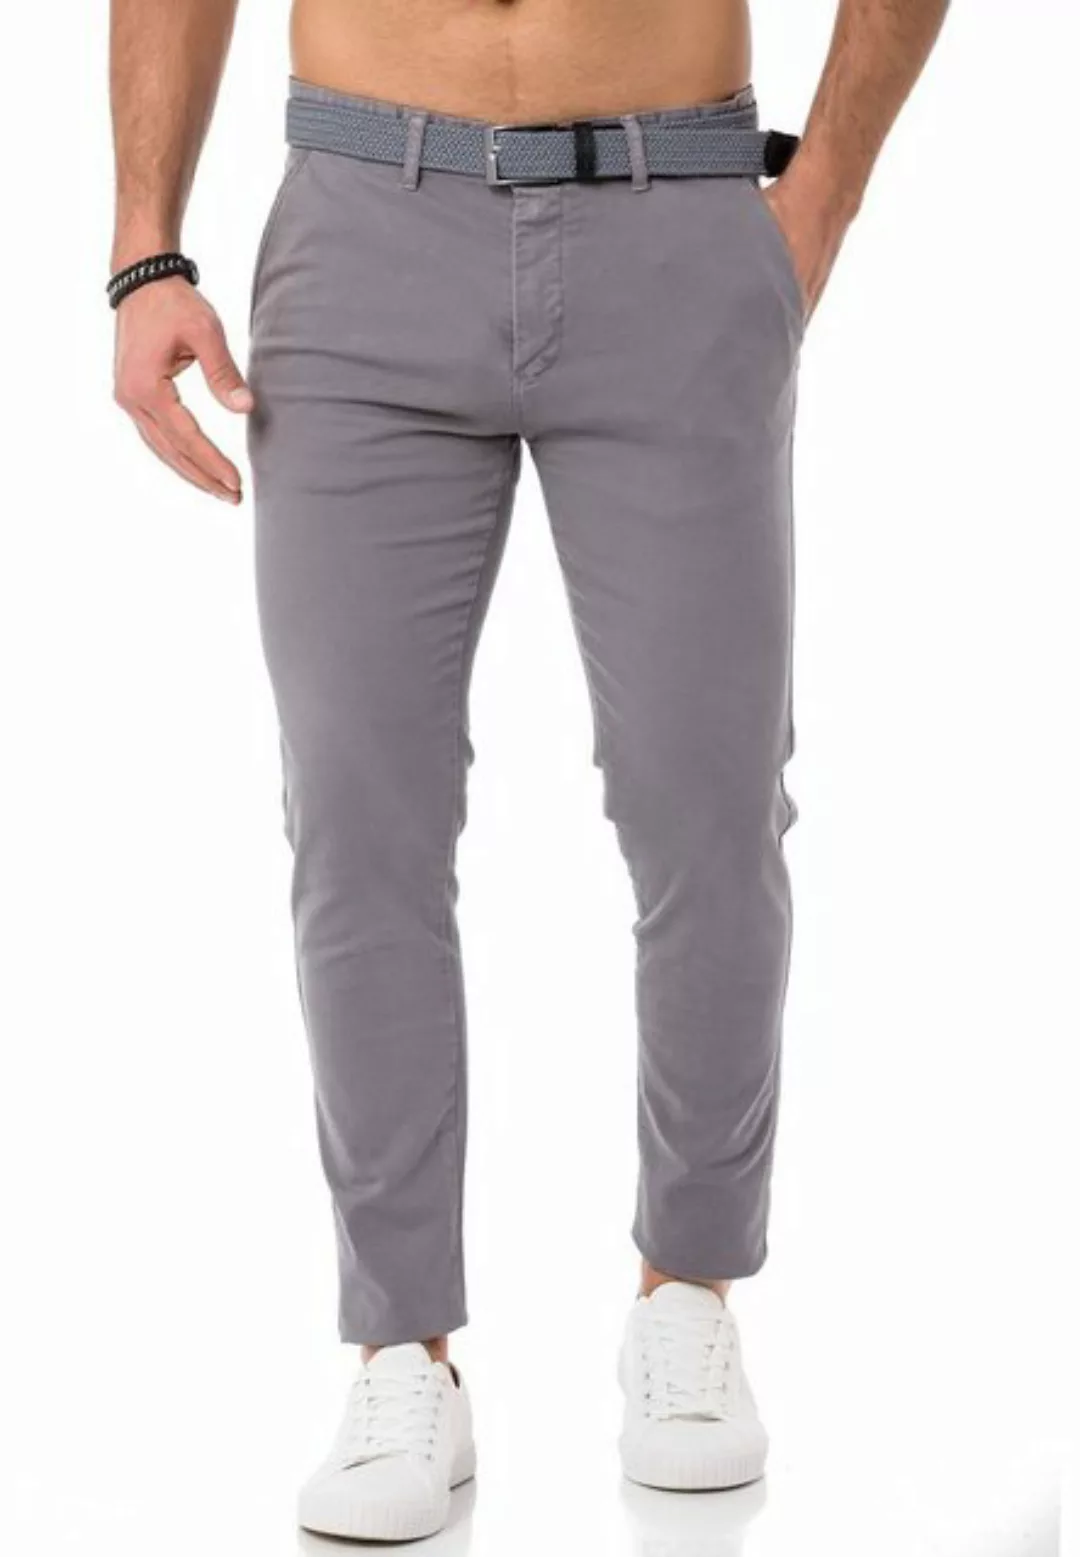 RedBridge Chinohose Chino Hose Pants mit Gürtel Anthrazit W29 L32 günstig online kaufen